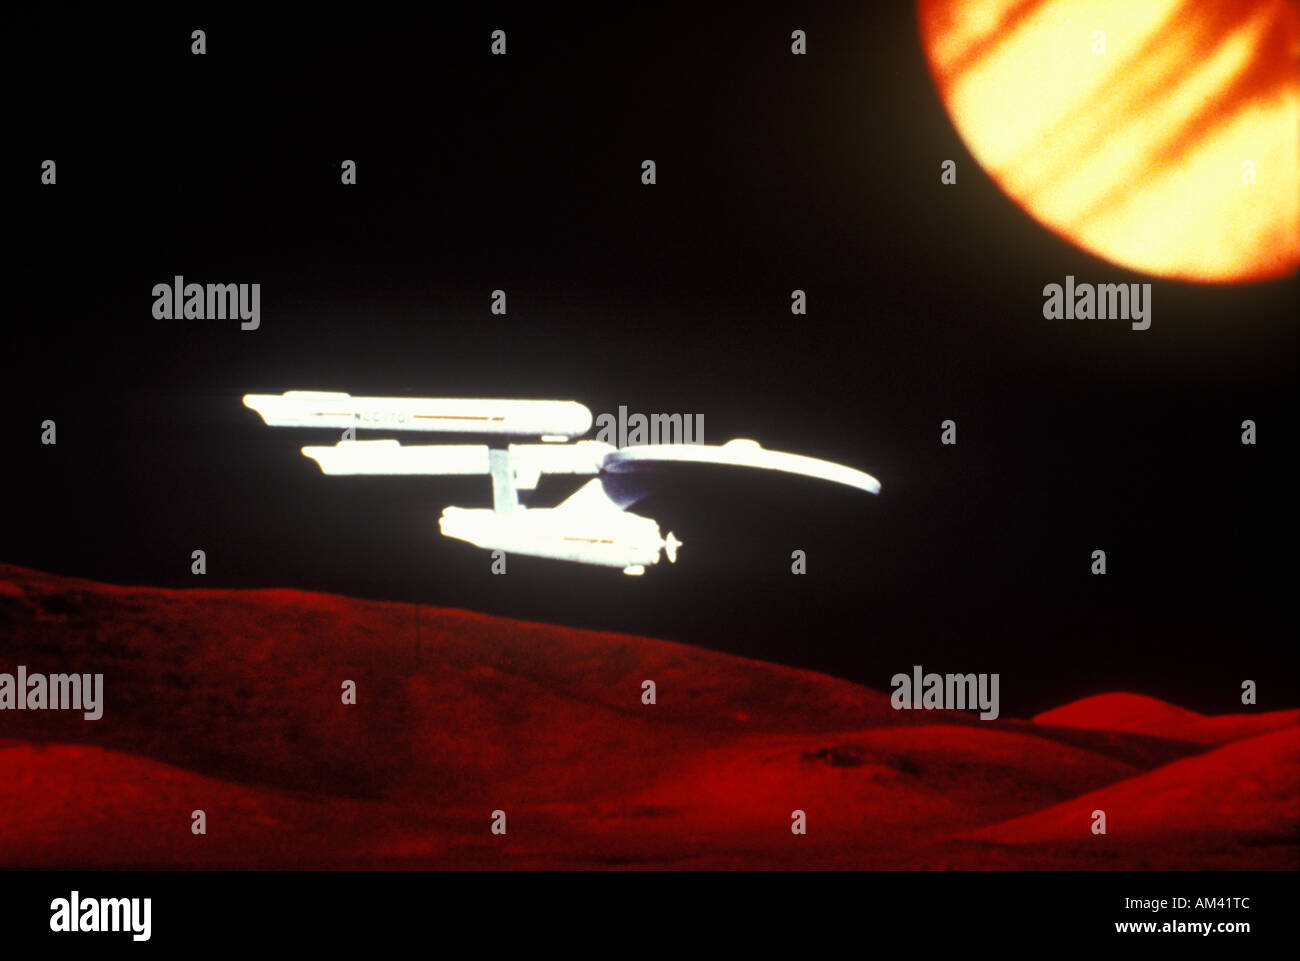 Star Trek s USS Enterprise soars over and alien landscape Stock Photo